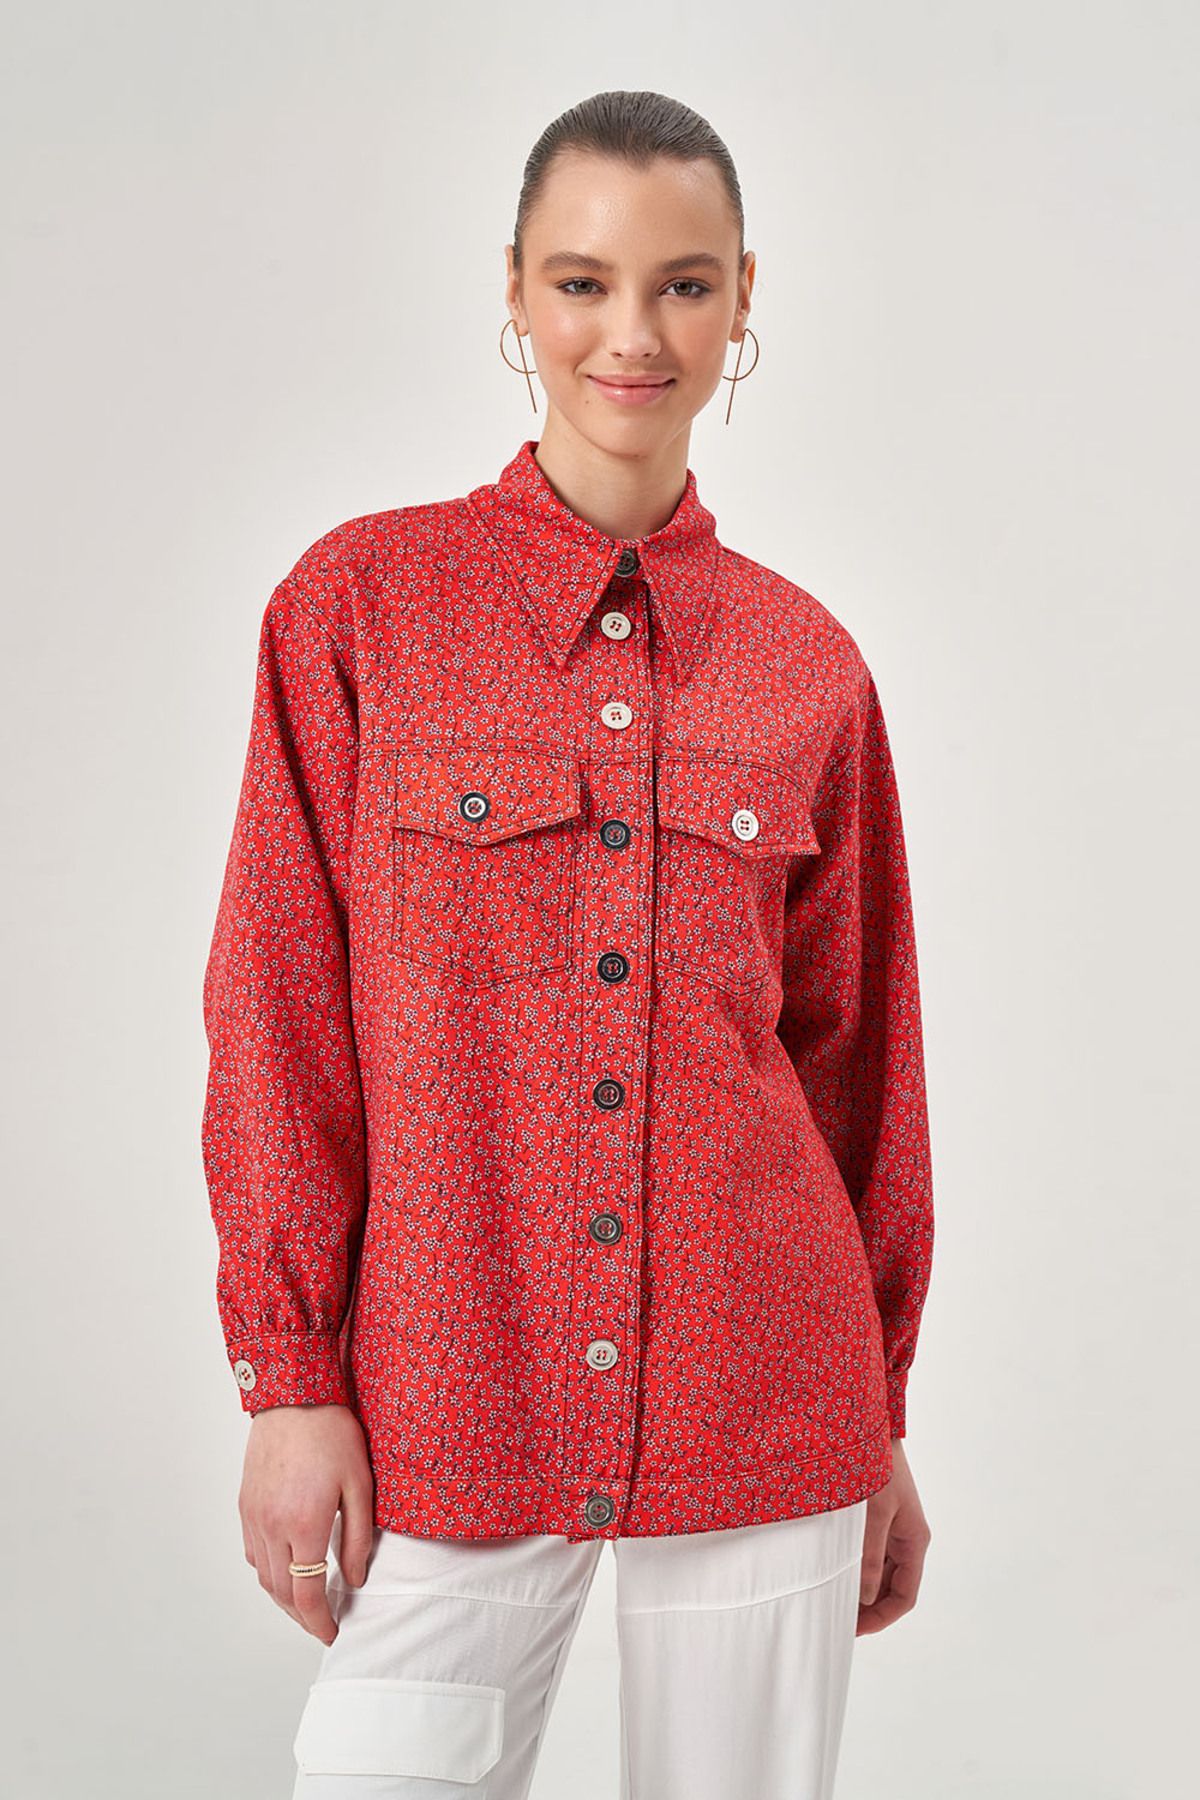 Mizalle Desenli Çıtçıtlı Kırmızı Ceket